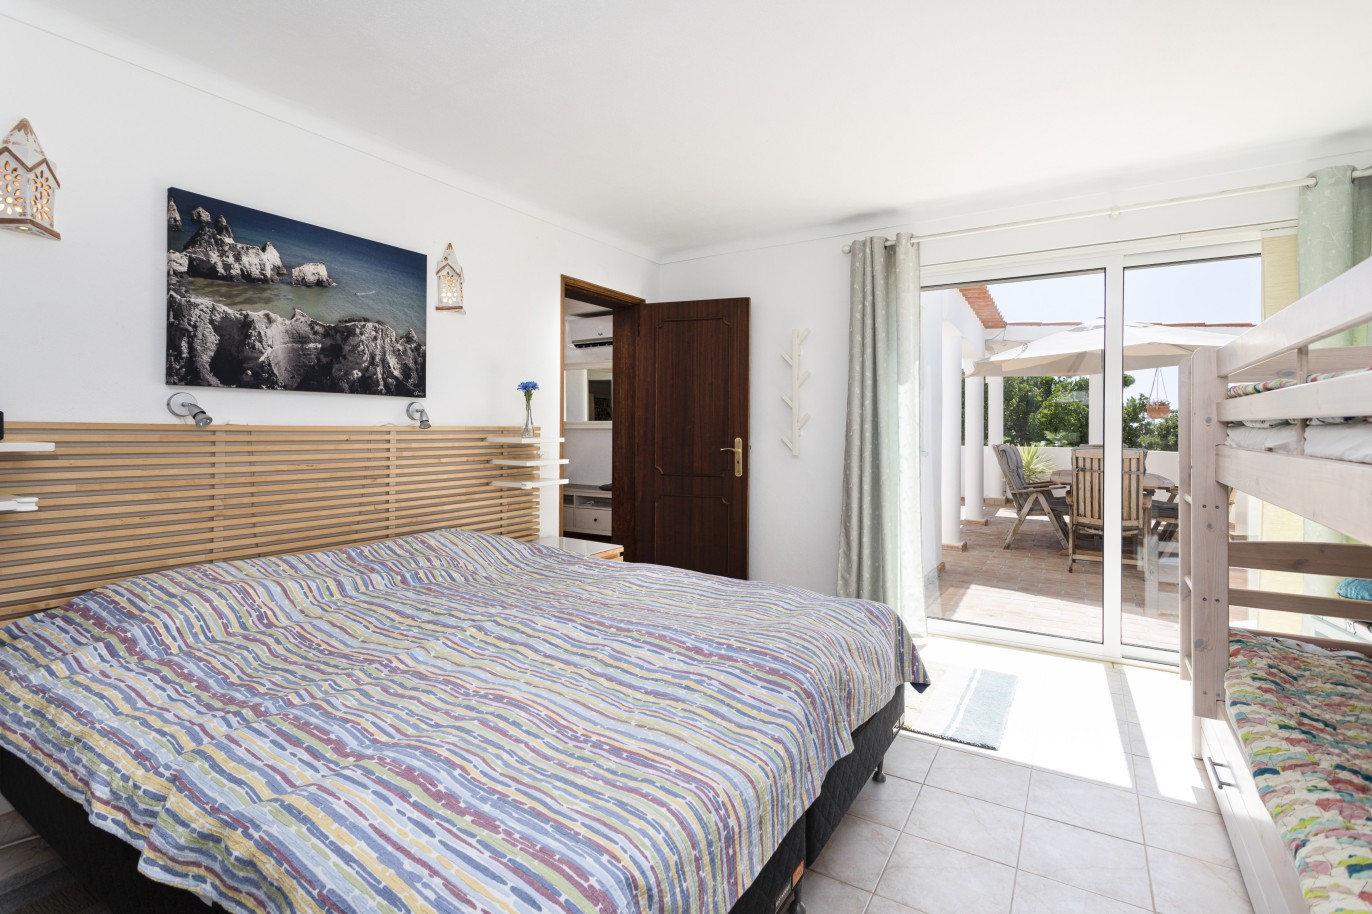 5 bedroom villa with pool and sea view, for sale in Estoi, Algarve_230485